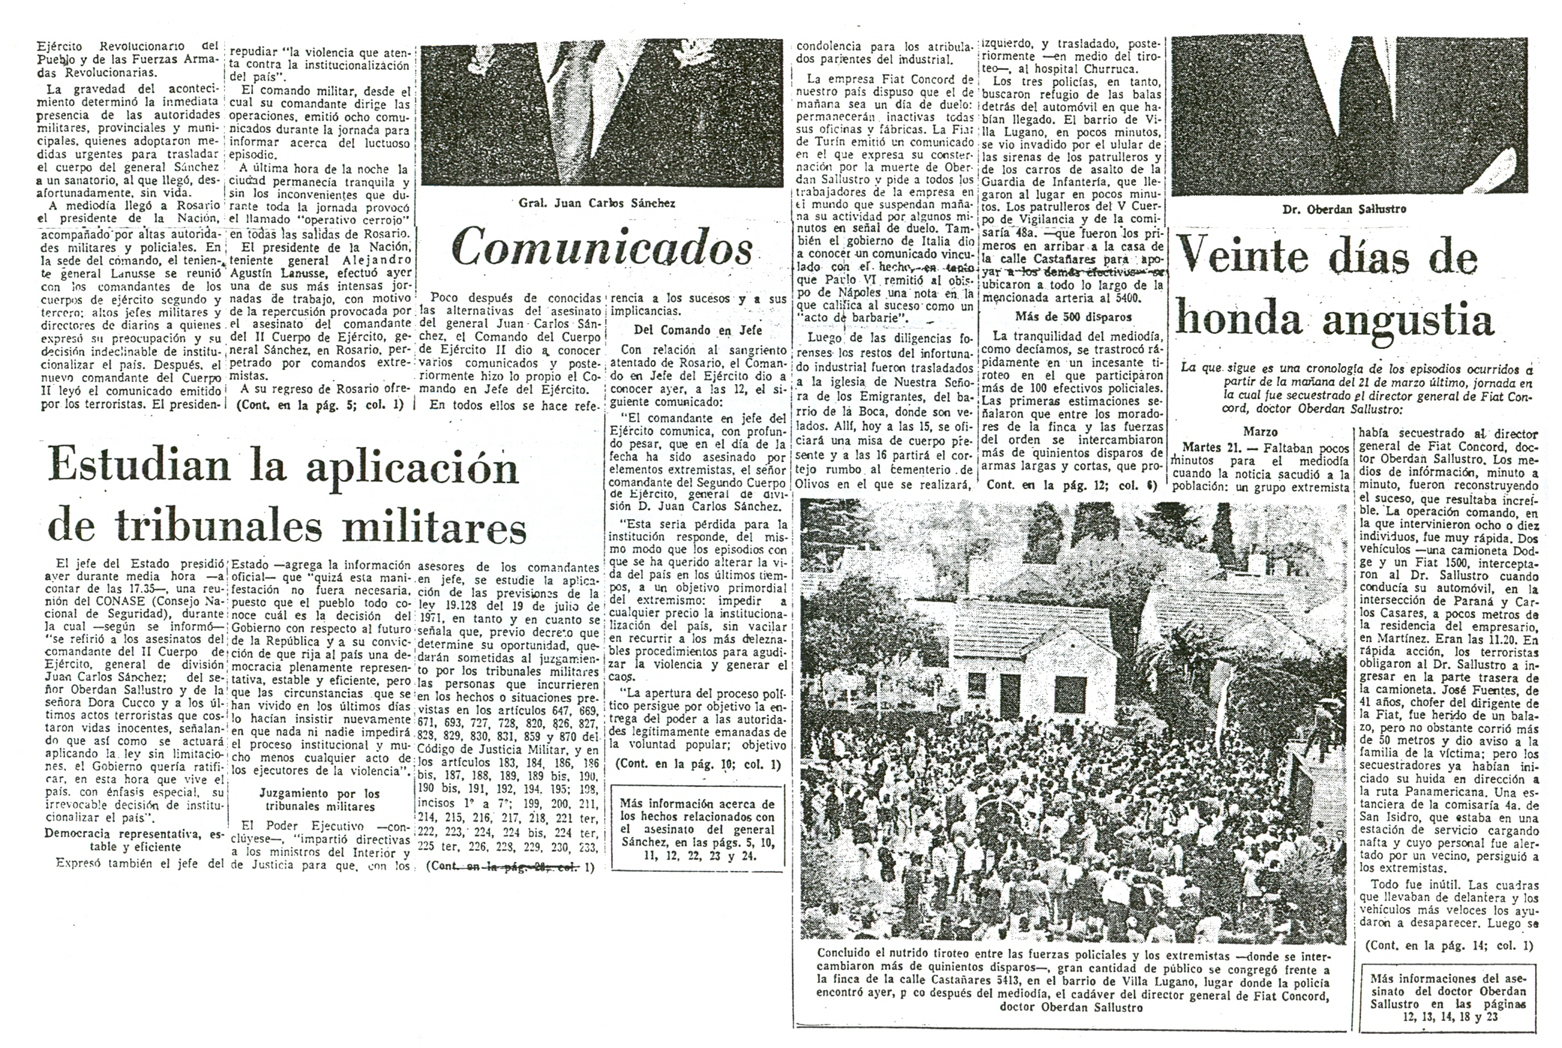 [1972-11-04+La+Nacion+-+Asesinatos+de+gral+Sanchez+y+Dr+Oberdan+Sallustro+02.jpg]